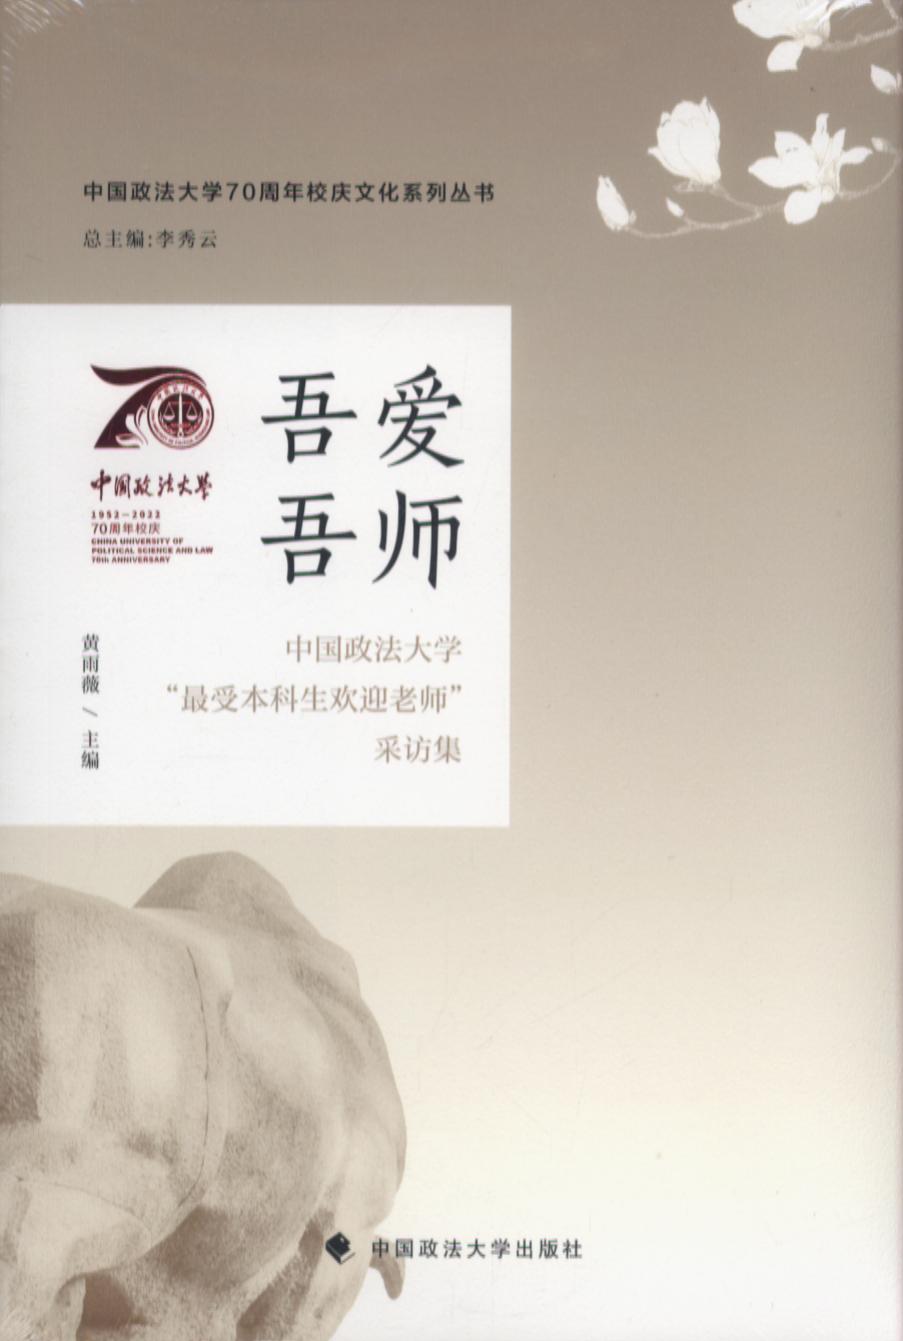 吾爱吾师/中国政法大学70周年校庆文化系列丛书